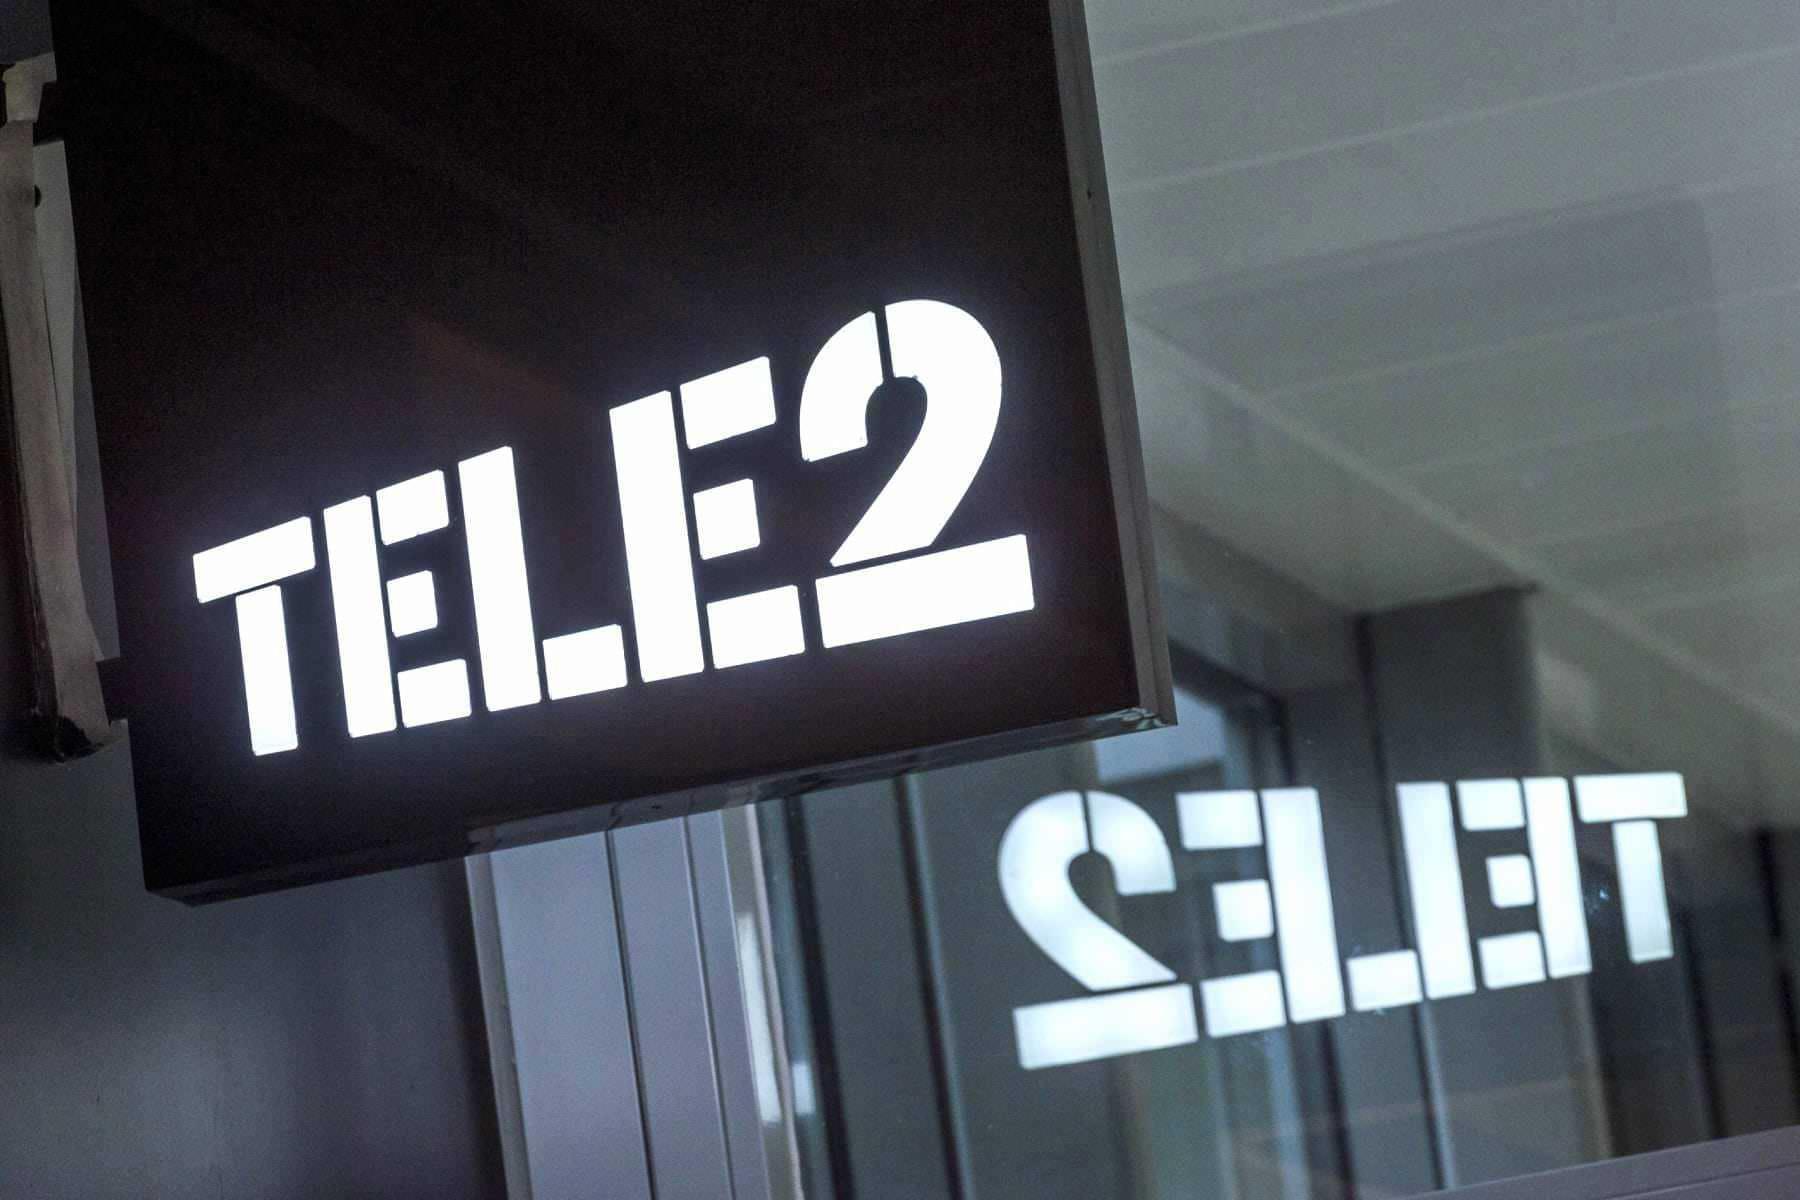  tele2   -   